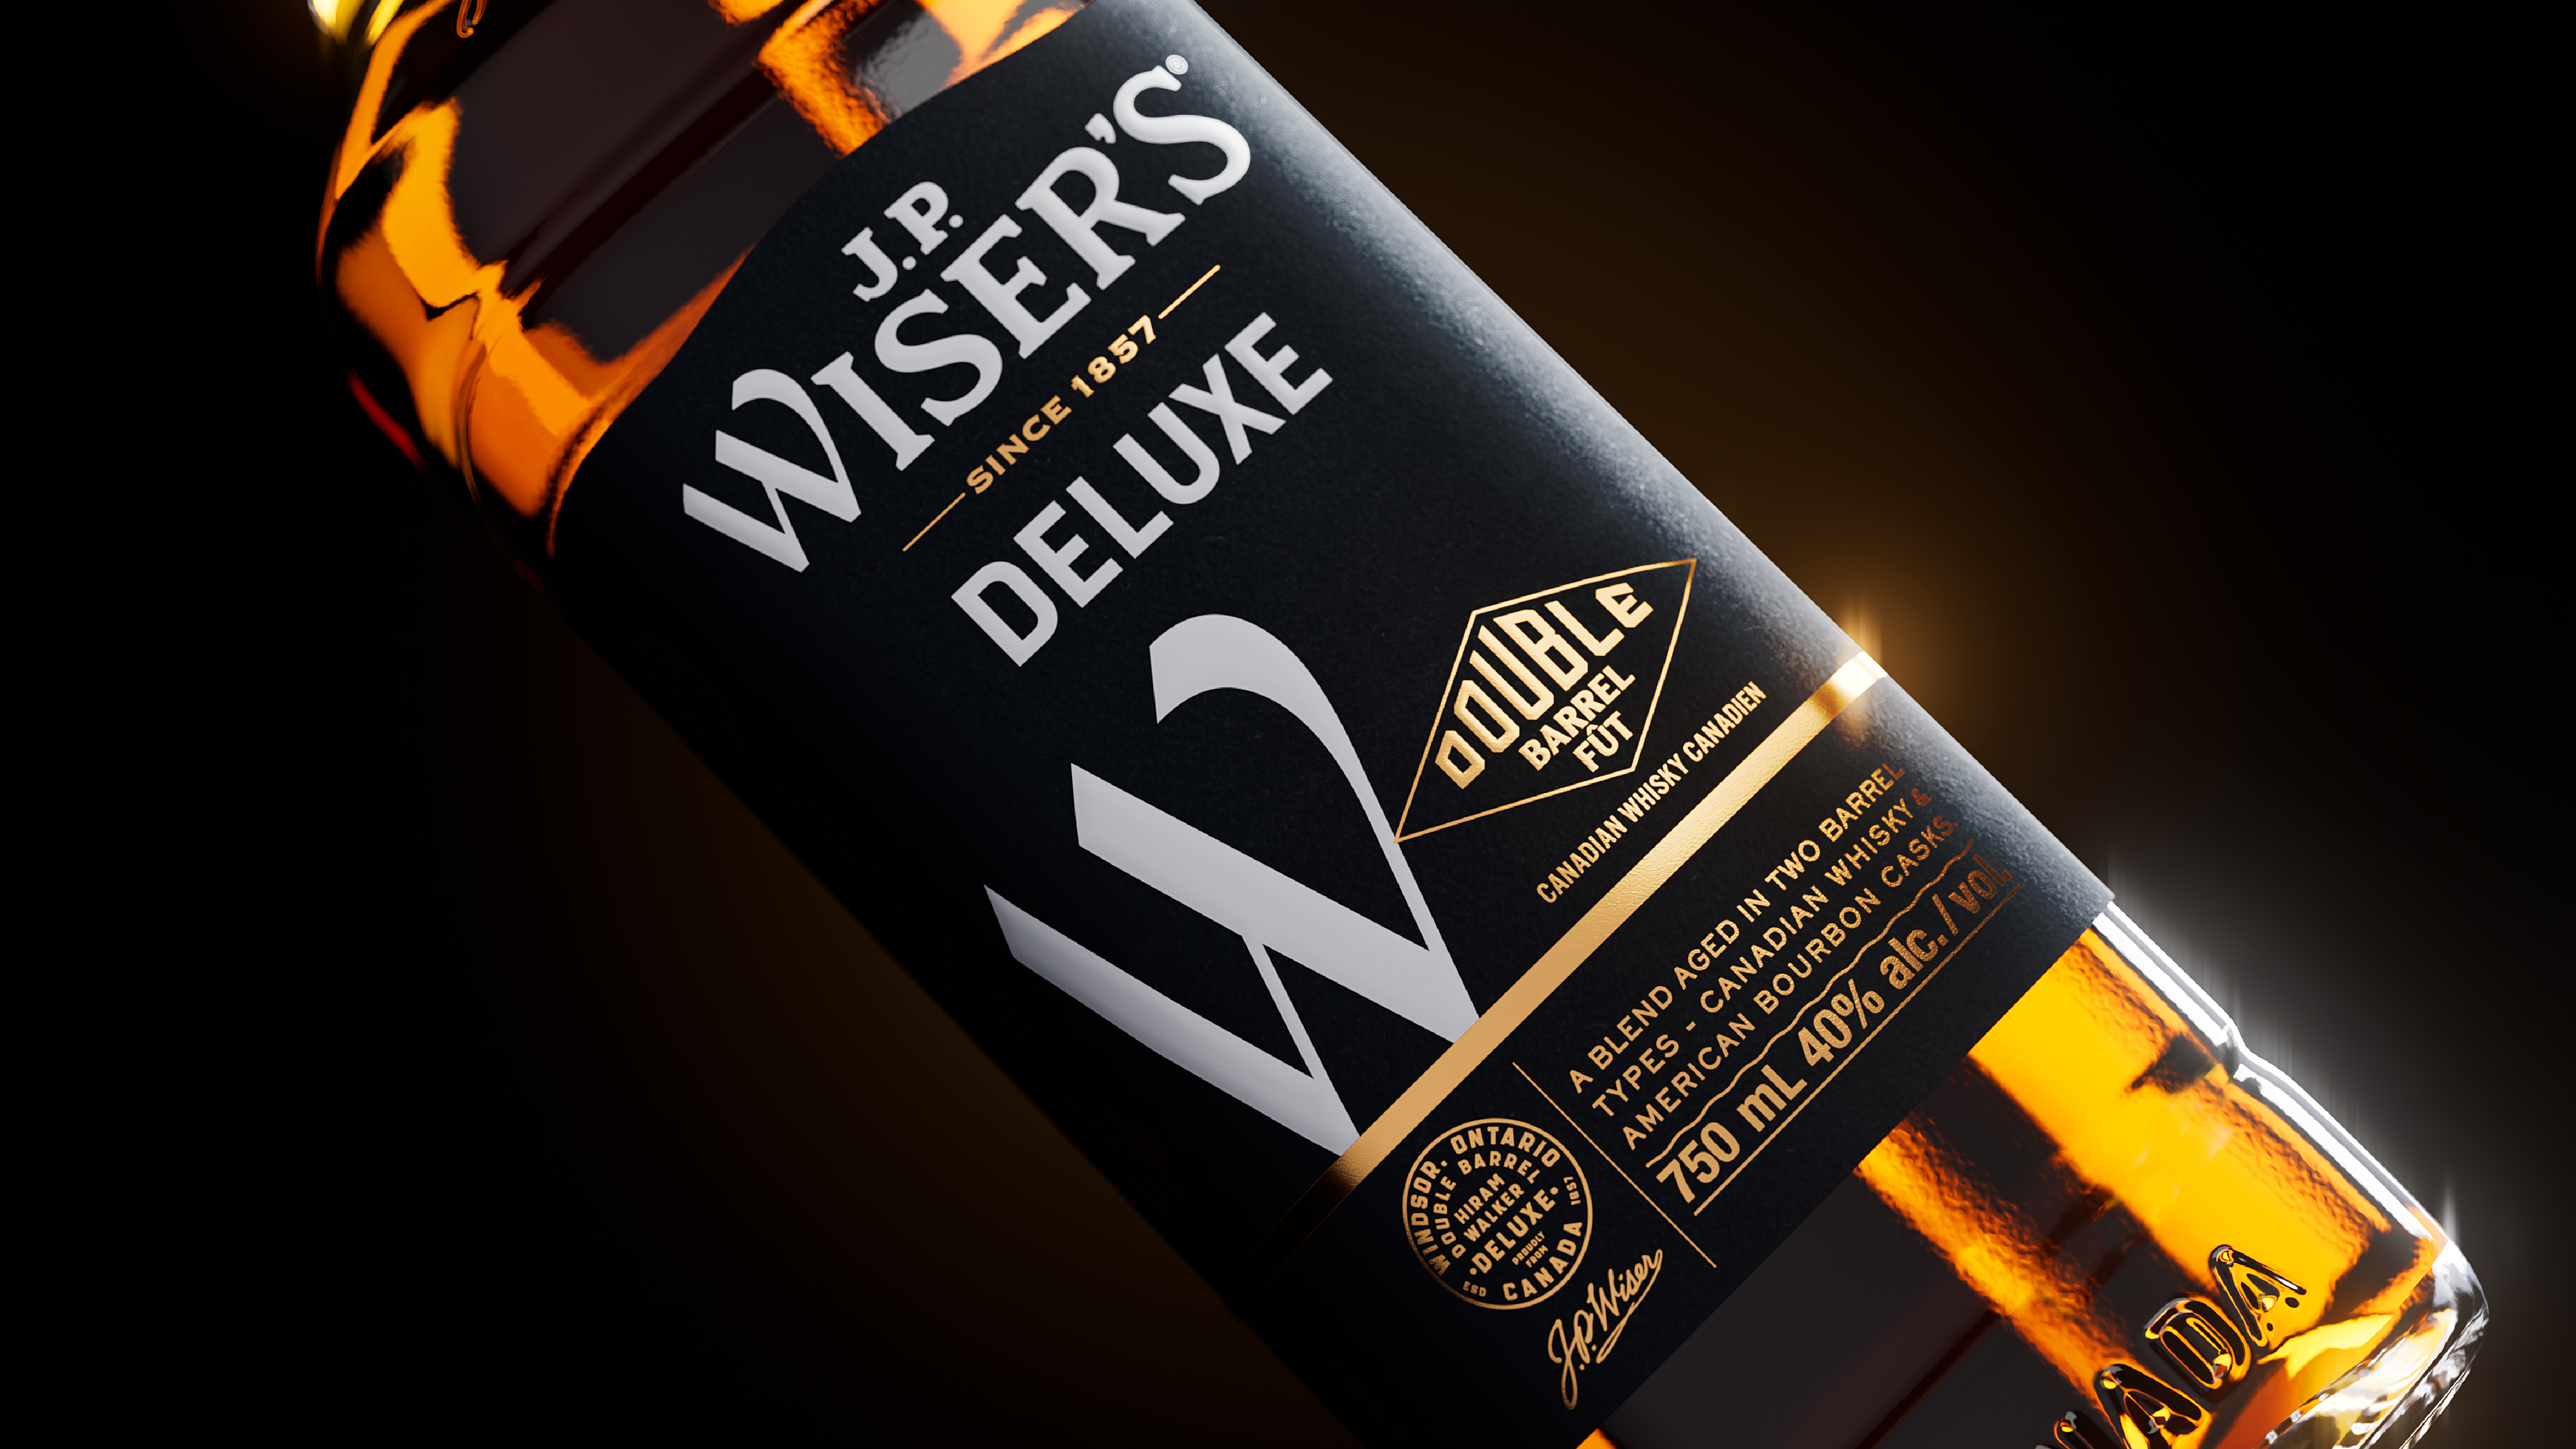 J.P. Wiser's Whisky Canada Deluxe 750mL Bottle, Whiskey & Bourbon